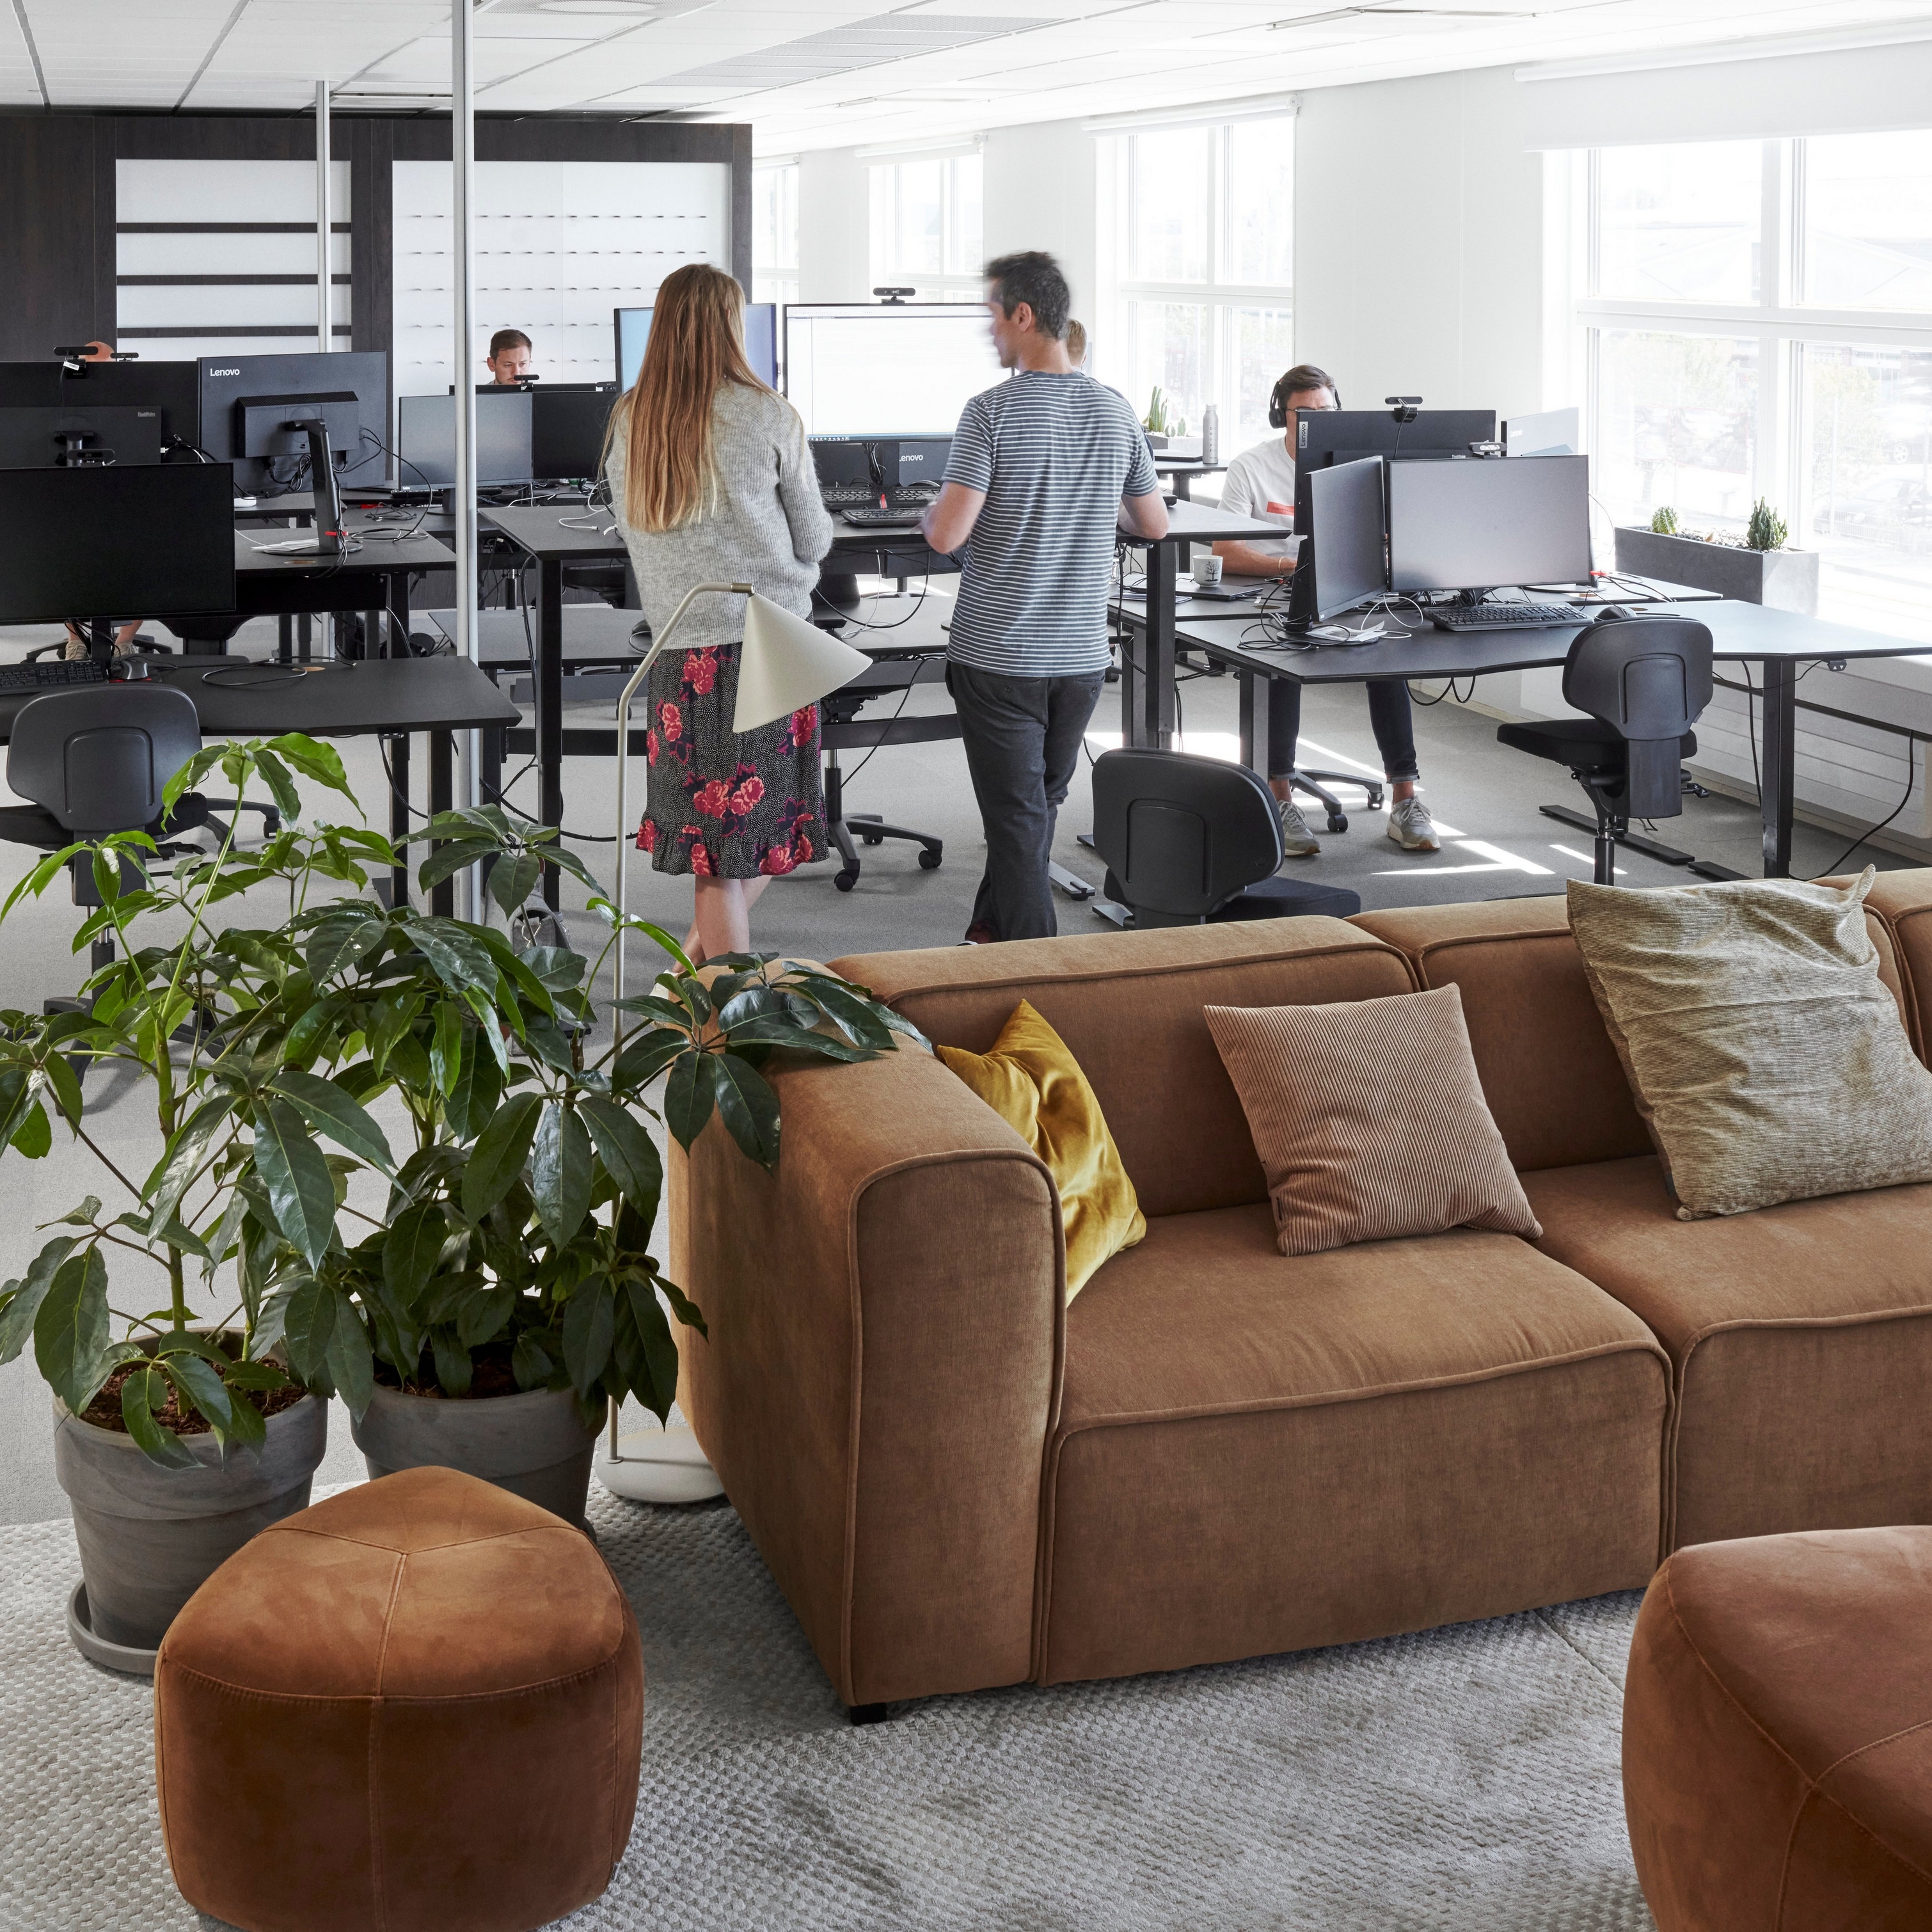 De moderne kantoorruimte op het hoofdkantoor van BoConcept met medewerkers, computers, planten en een bruine Carmo zitbank.